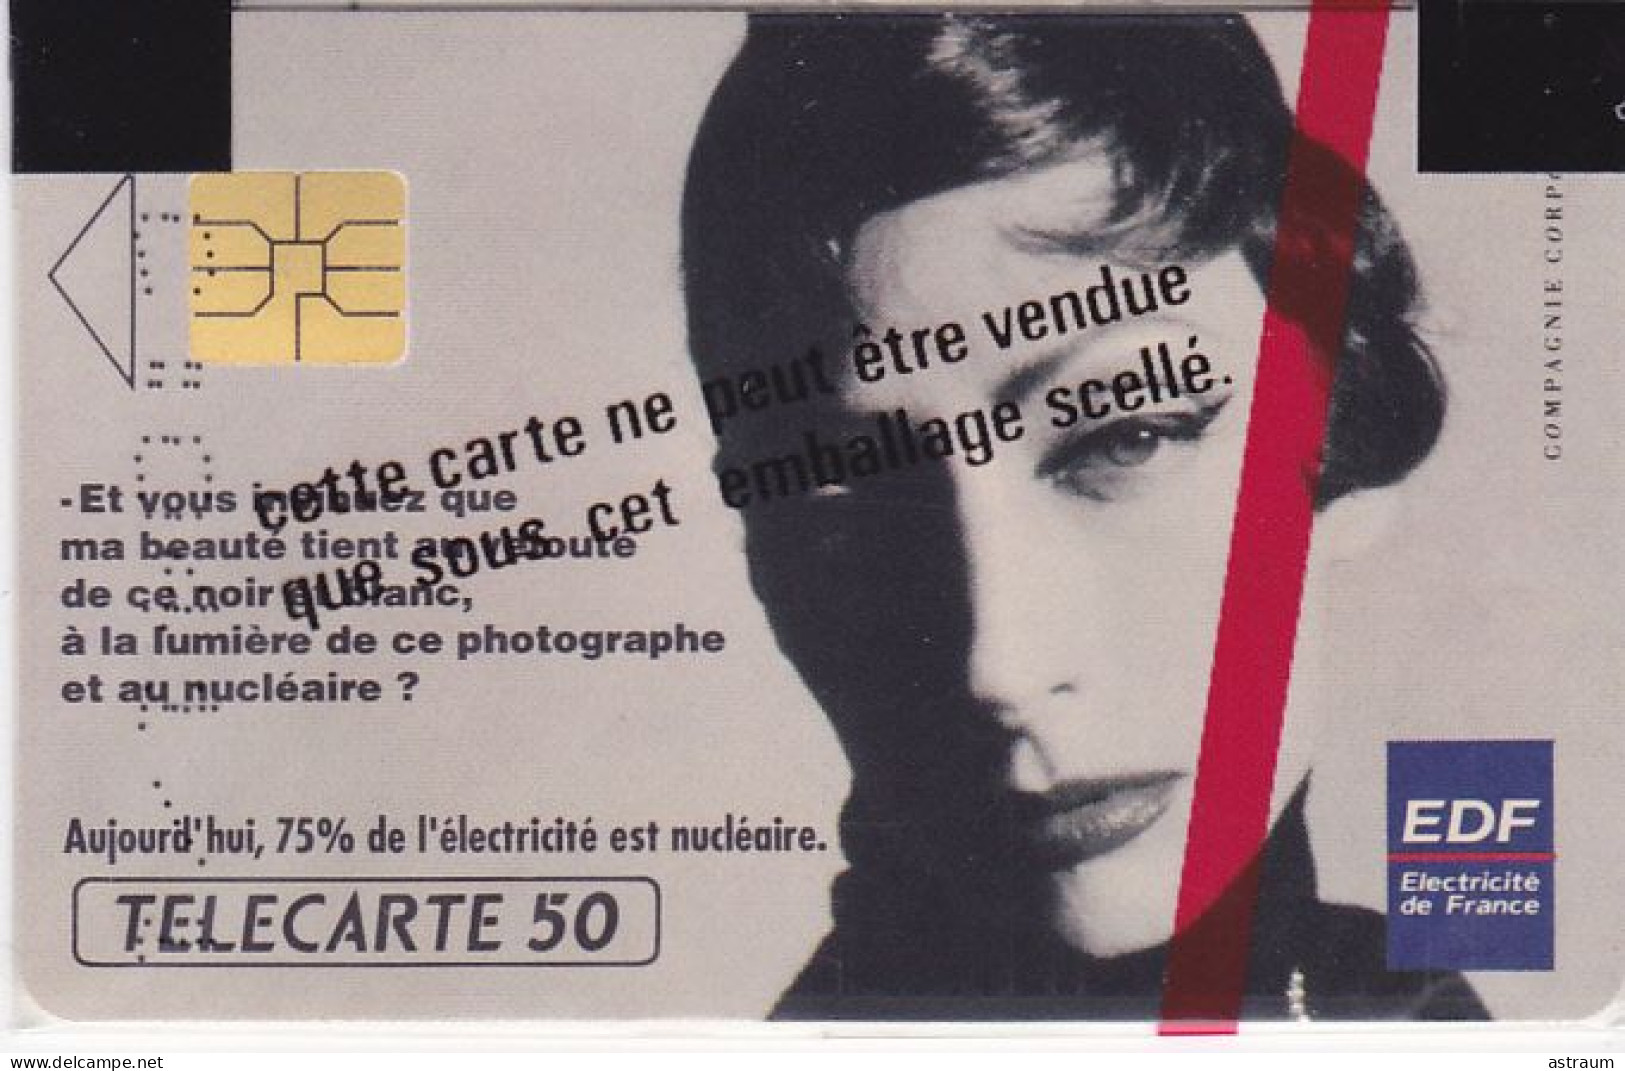 Telecarte Privée / Publique En85 NSB - Edf Femme Nucleaire - 50 U - So3 - 1991 - 50 Einheiten